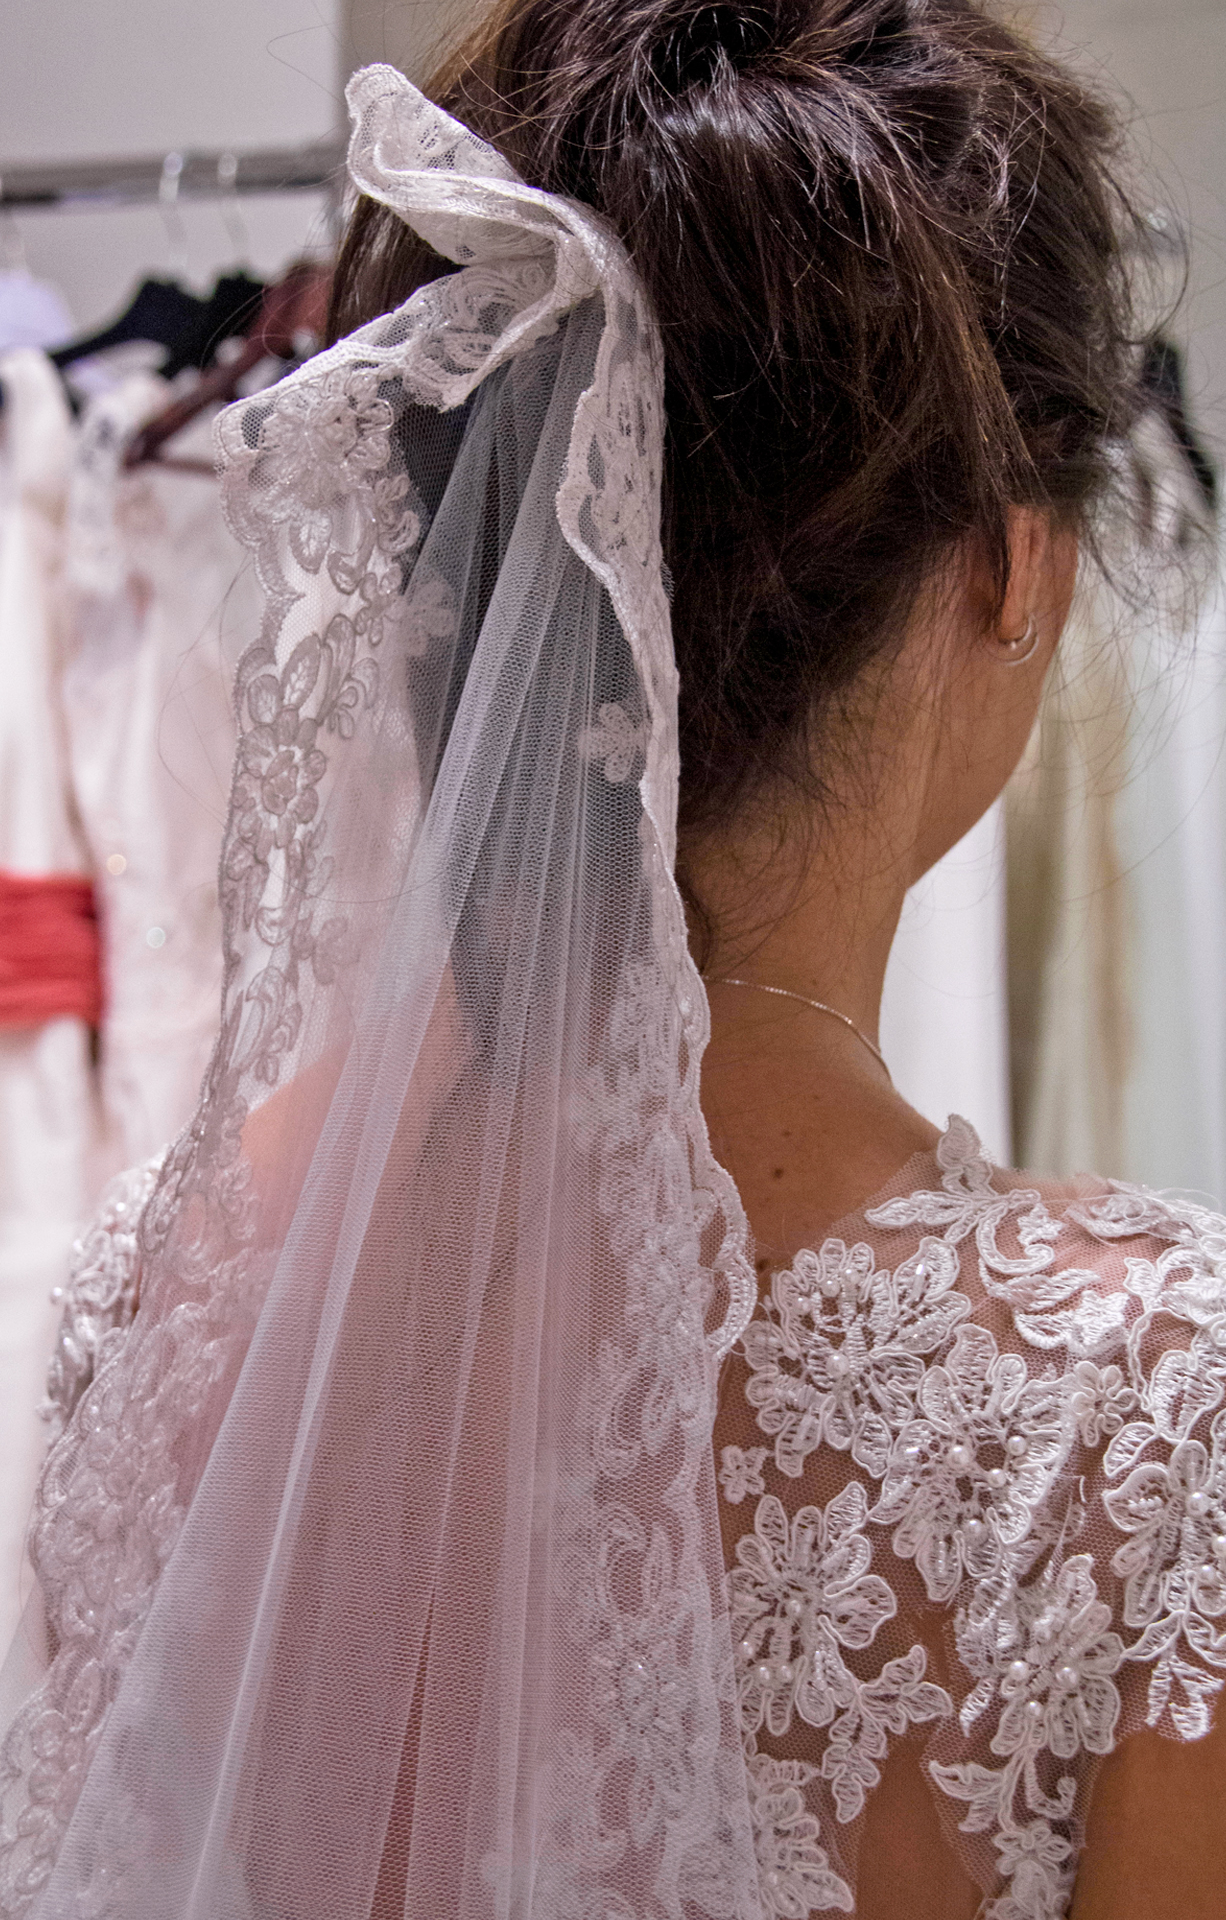 Lola Hurtado Vestidos de Novia vestidos boda madrid Gasas, tules, pedrería, bordados… tejidos y materiales de ensueño para Novias únicas